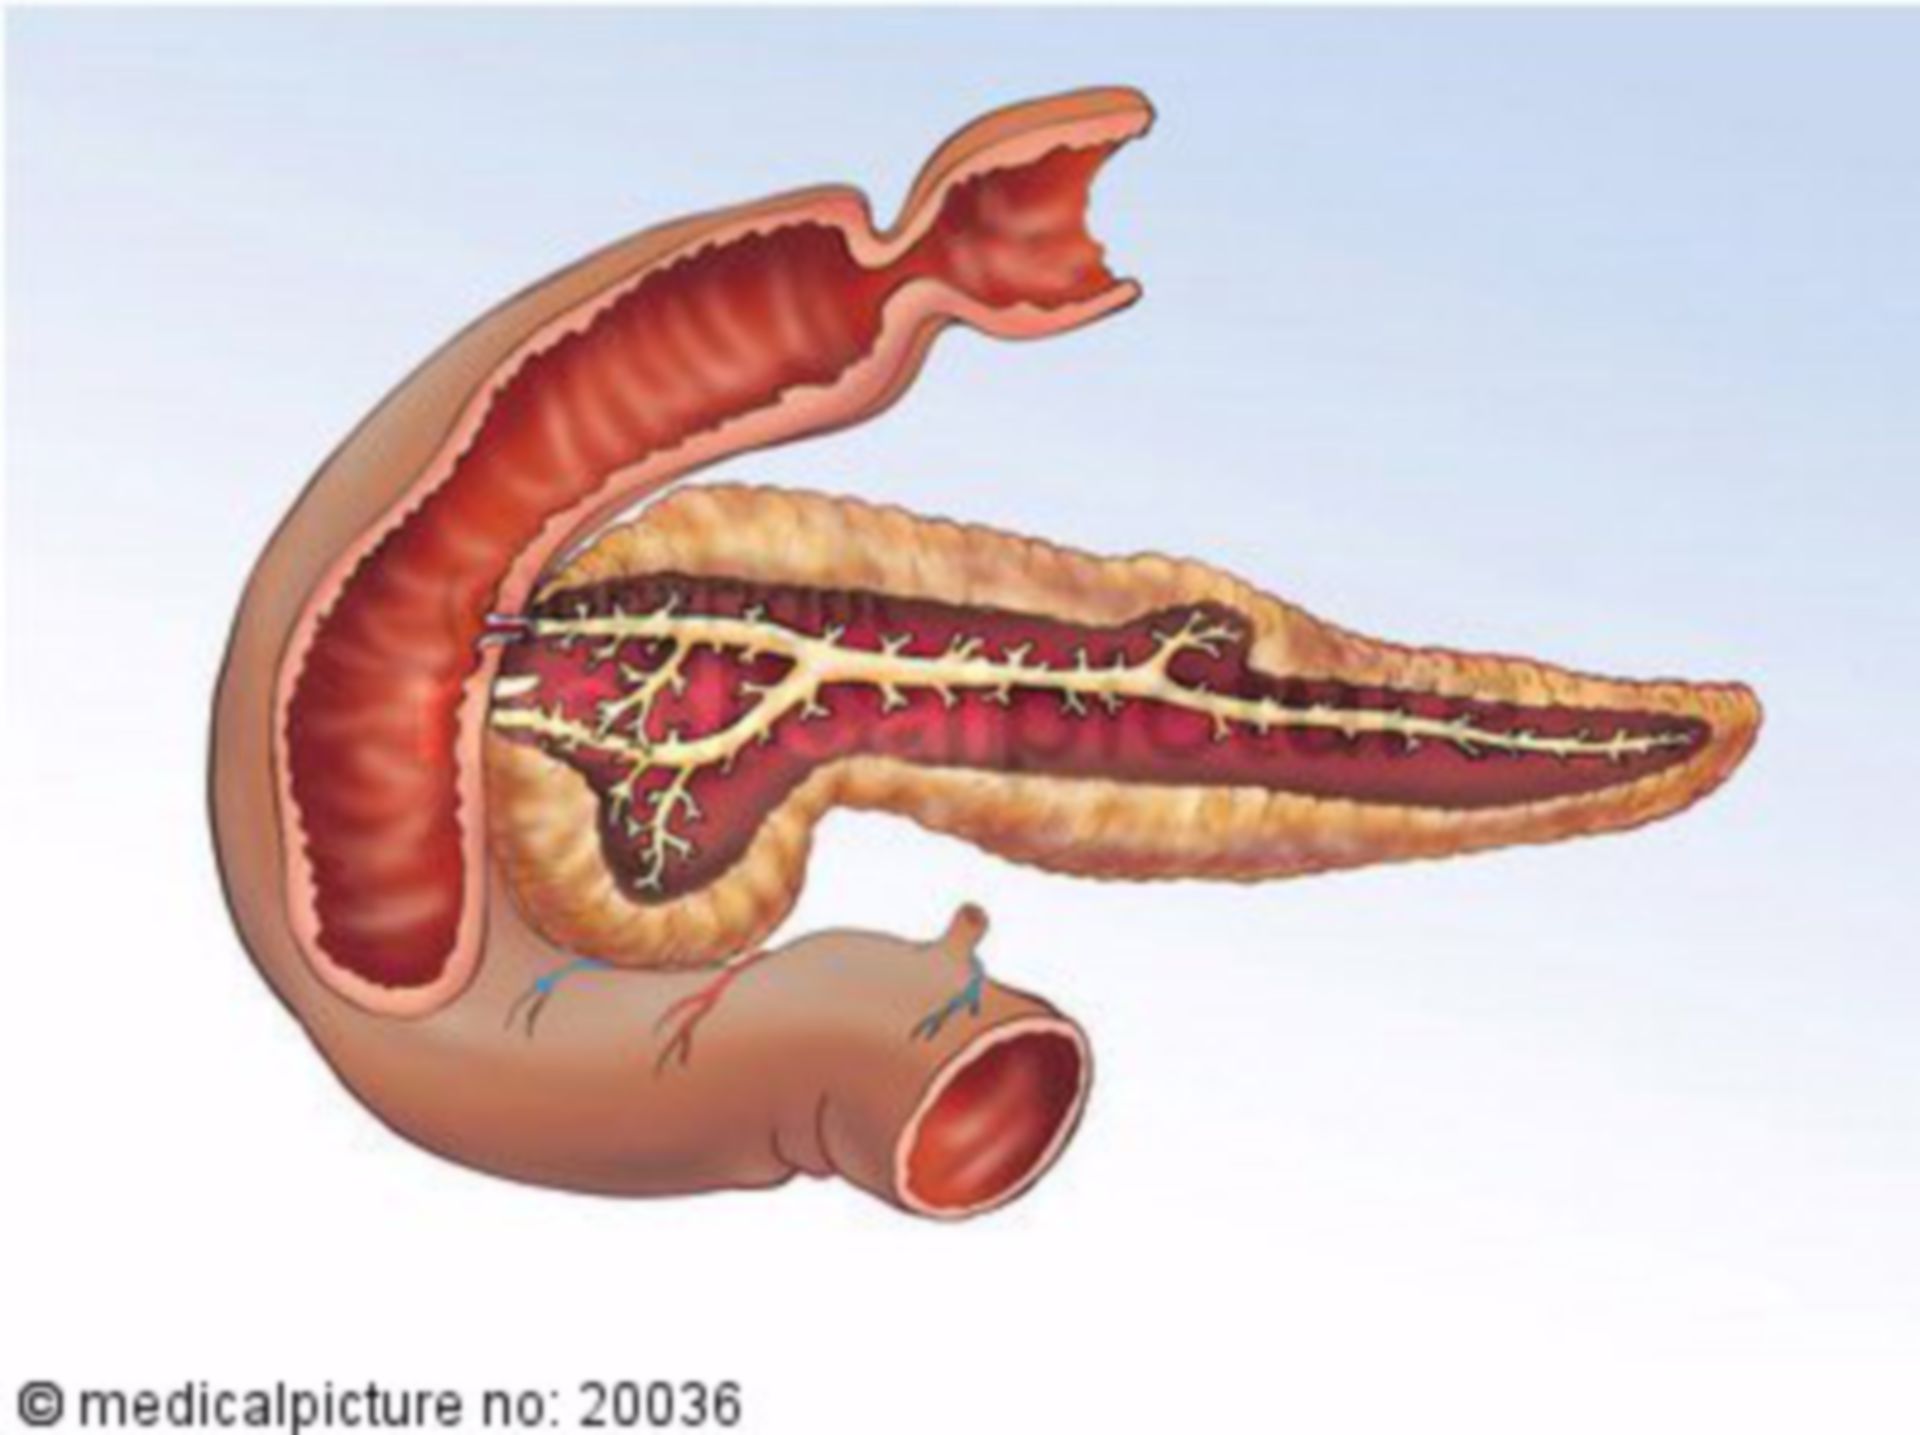 Human pancreas